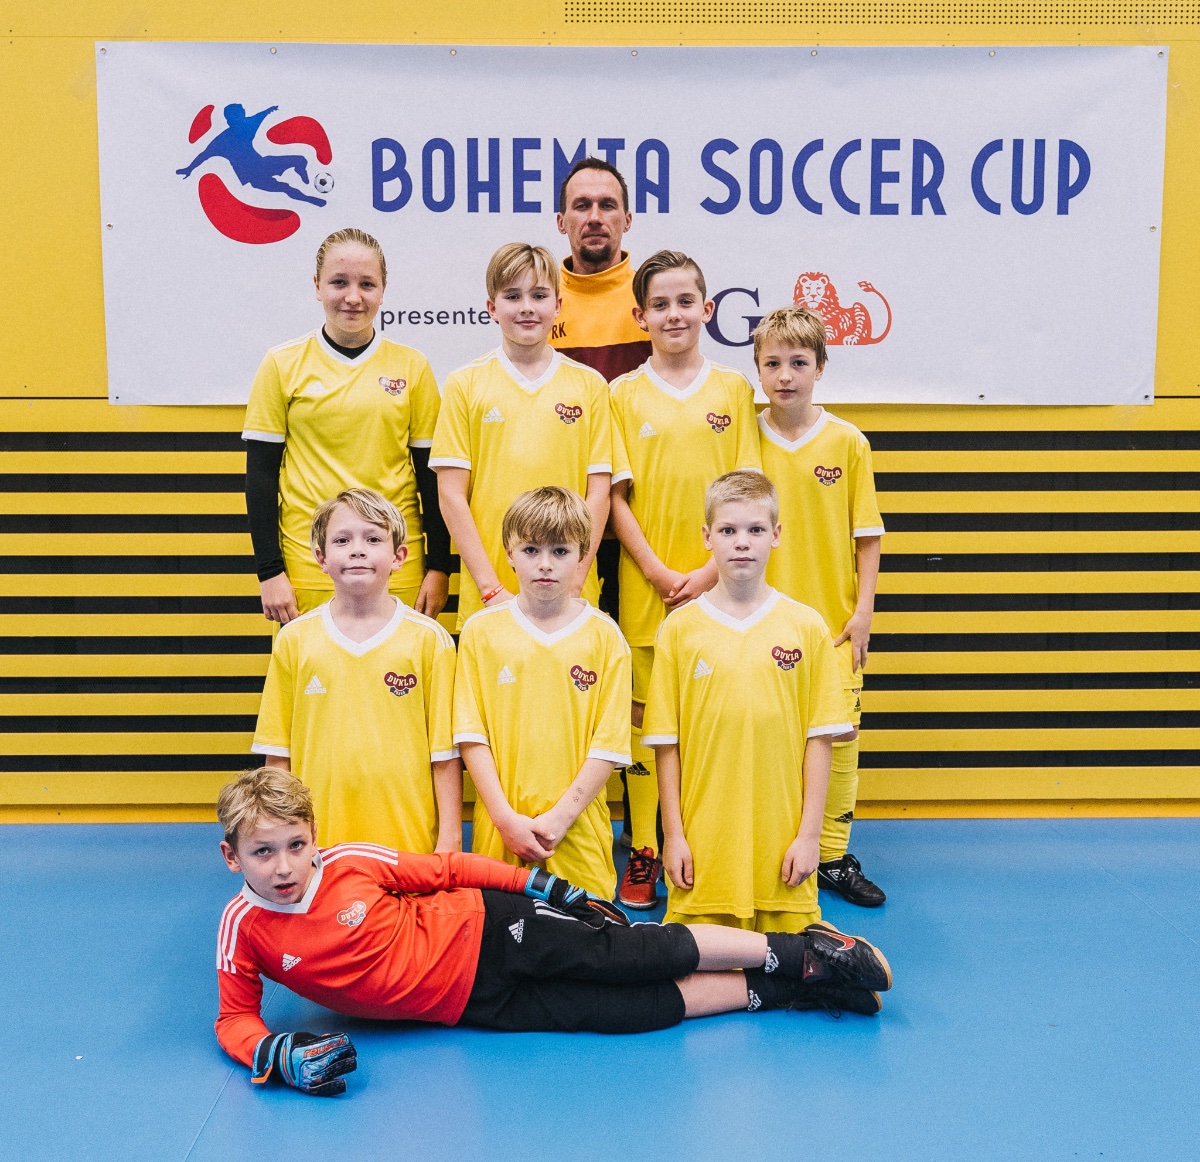 Zimní ING Bohemia Soccer Cup 2018 - kategorie U11